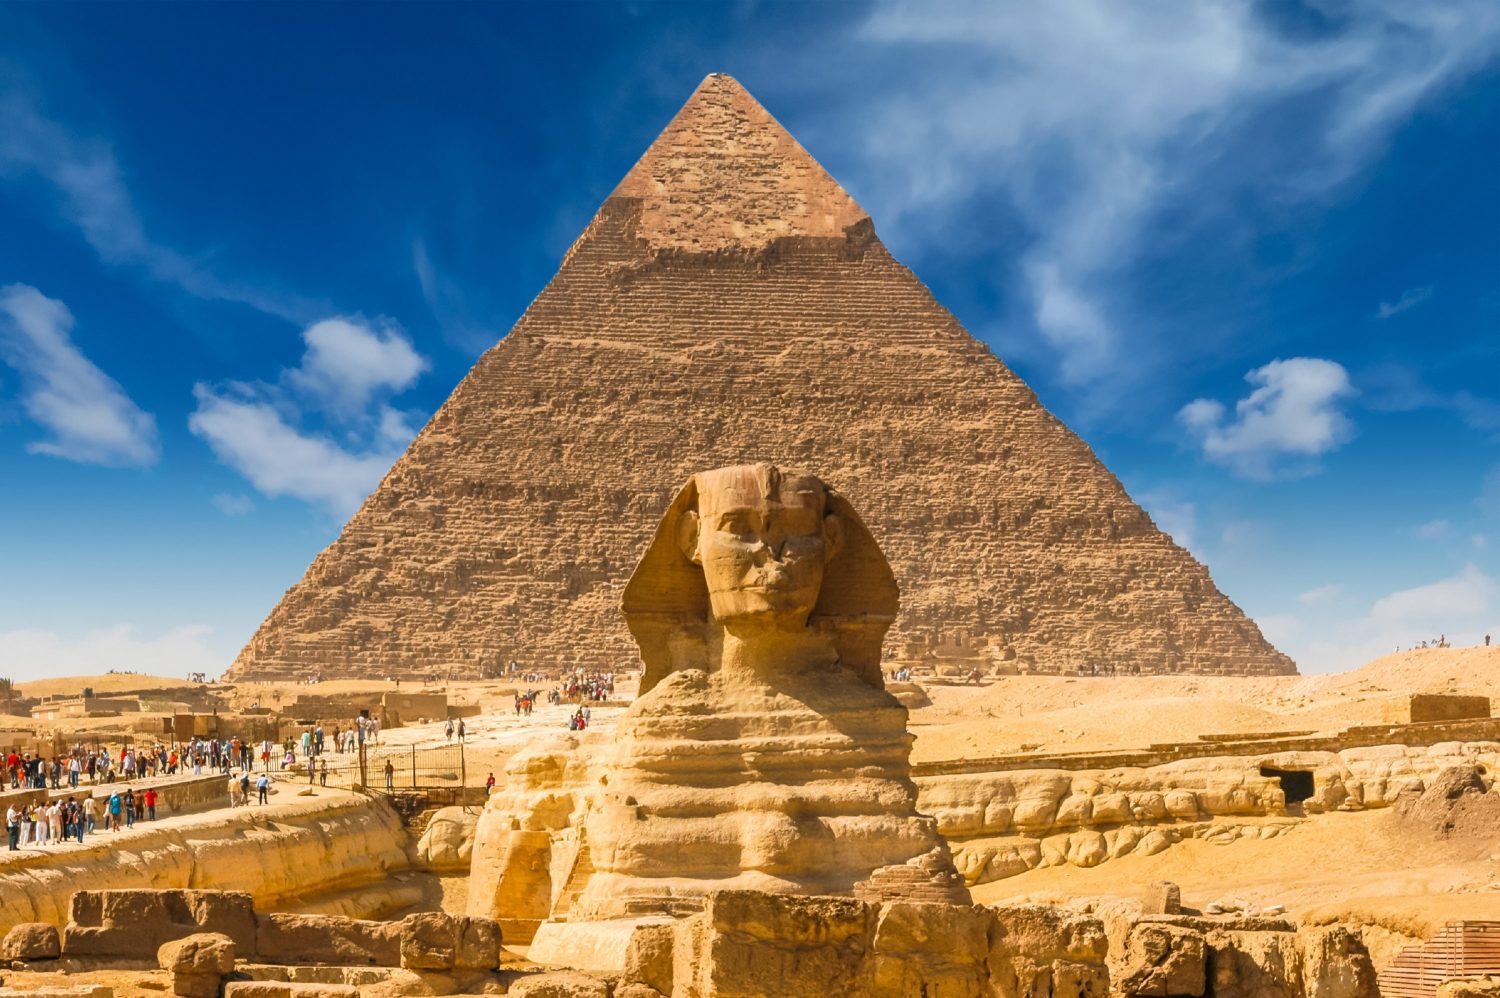 Paquete barato de viaje a Egipto y Crucero por el Nilo